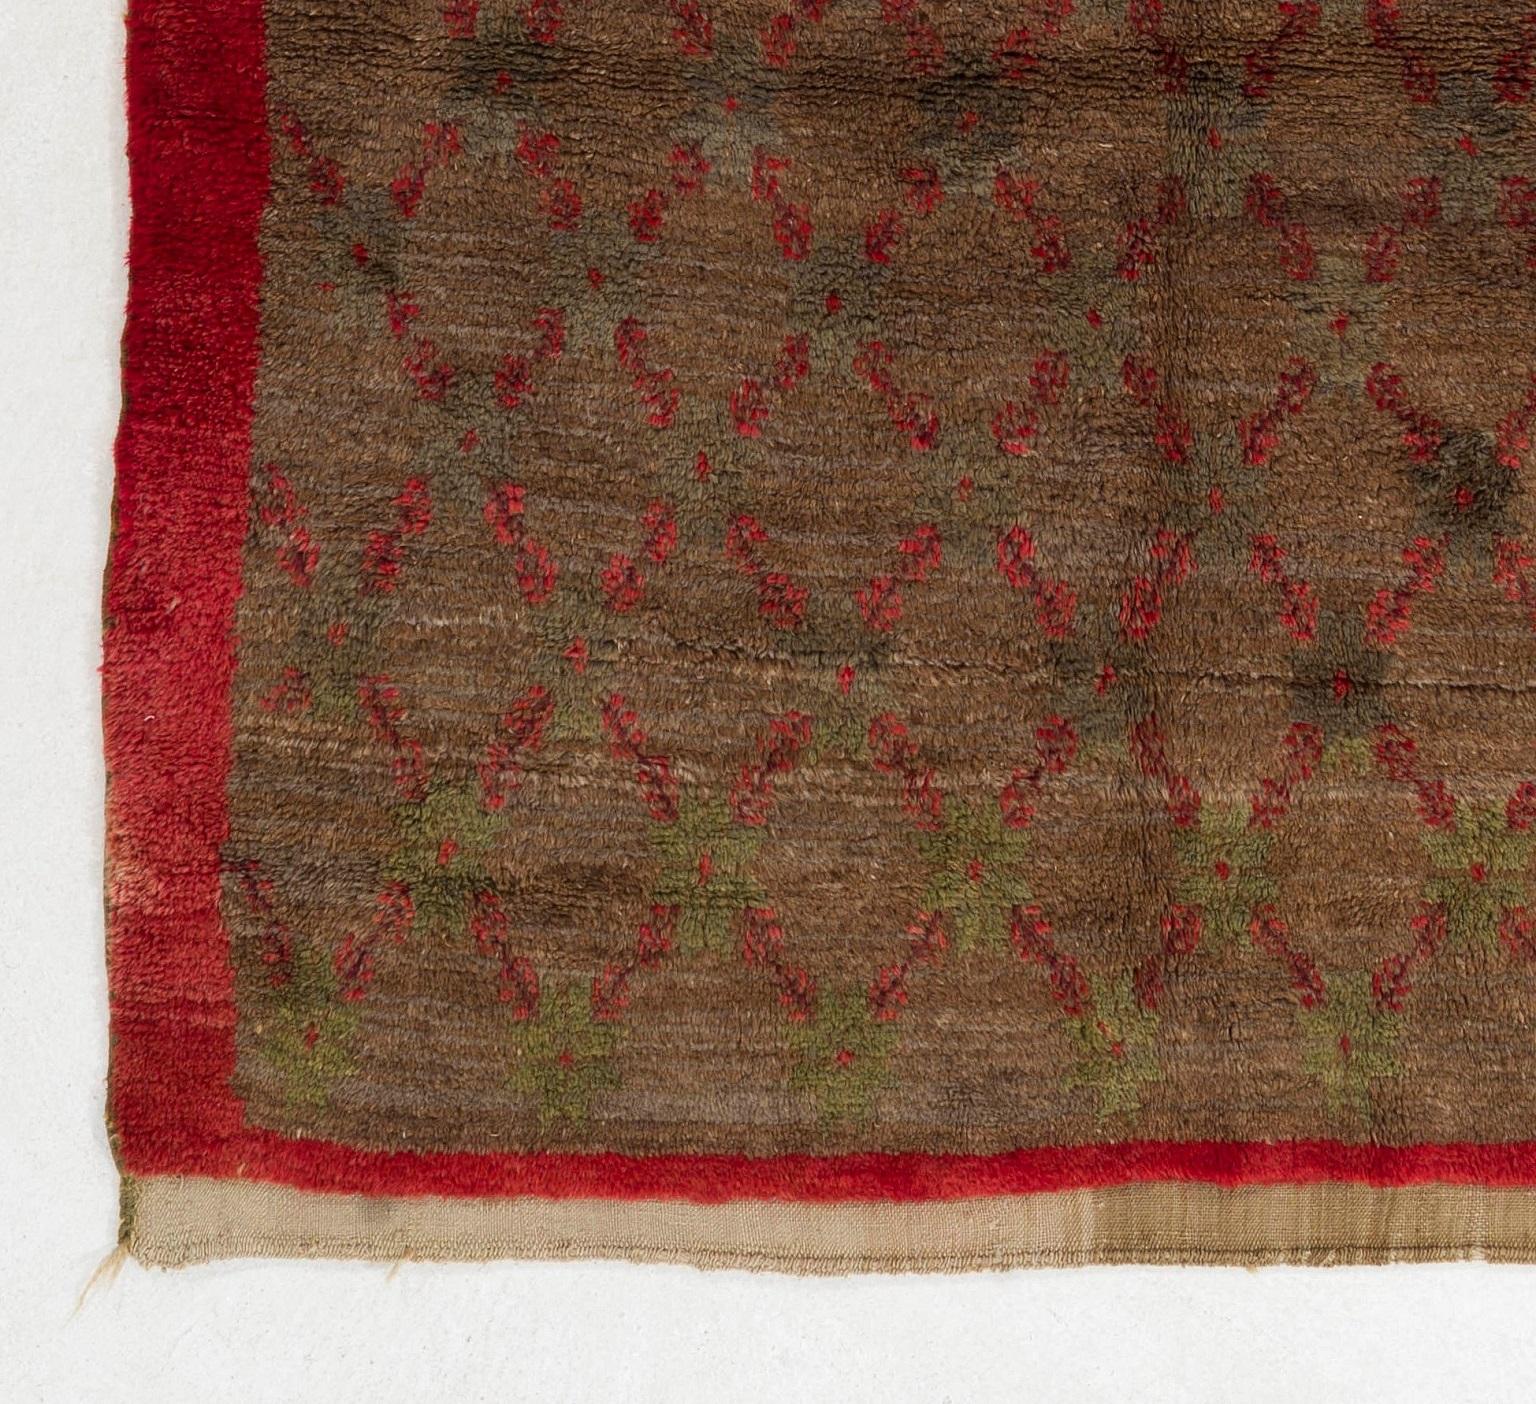 Ce tapis vintage unique d'Anatolie centrale est tout à fait frappant avec son design floral en treillis et son histoire de couleurs. 

Le contraste entre l'arrière-plan latté et les fleurs rouges cramoisies, ainsi que les treillis ivoires composés